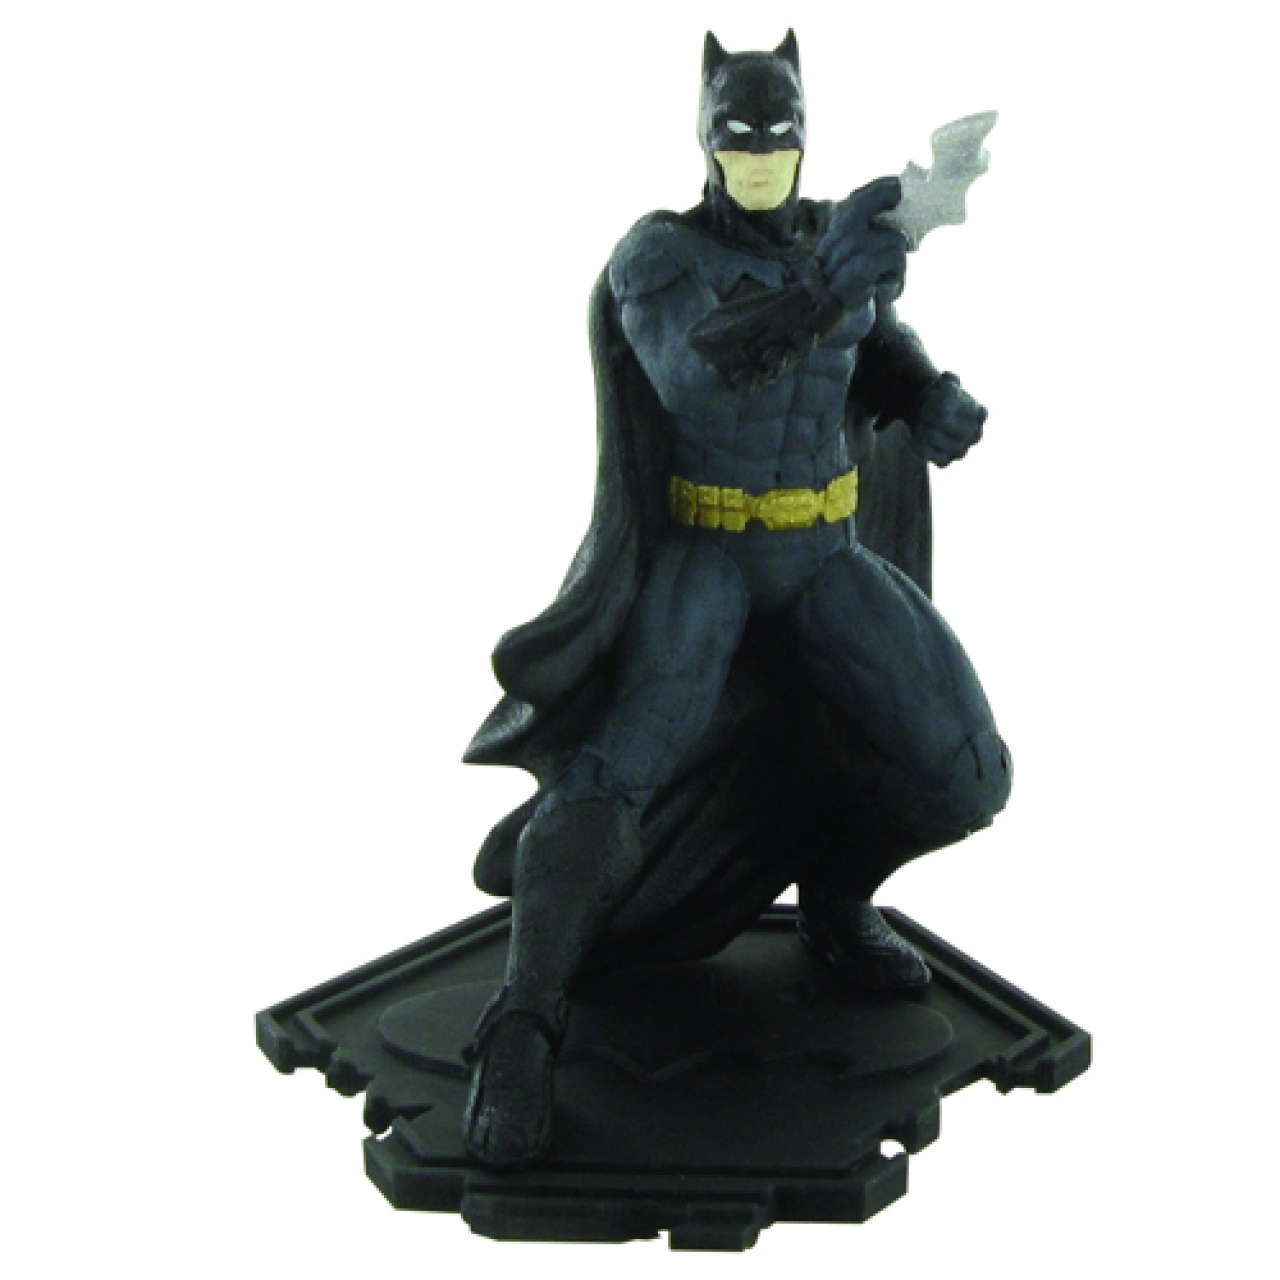 Tortenfigur "Batman", 9,5 cm